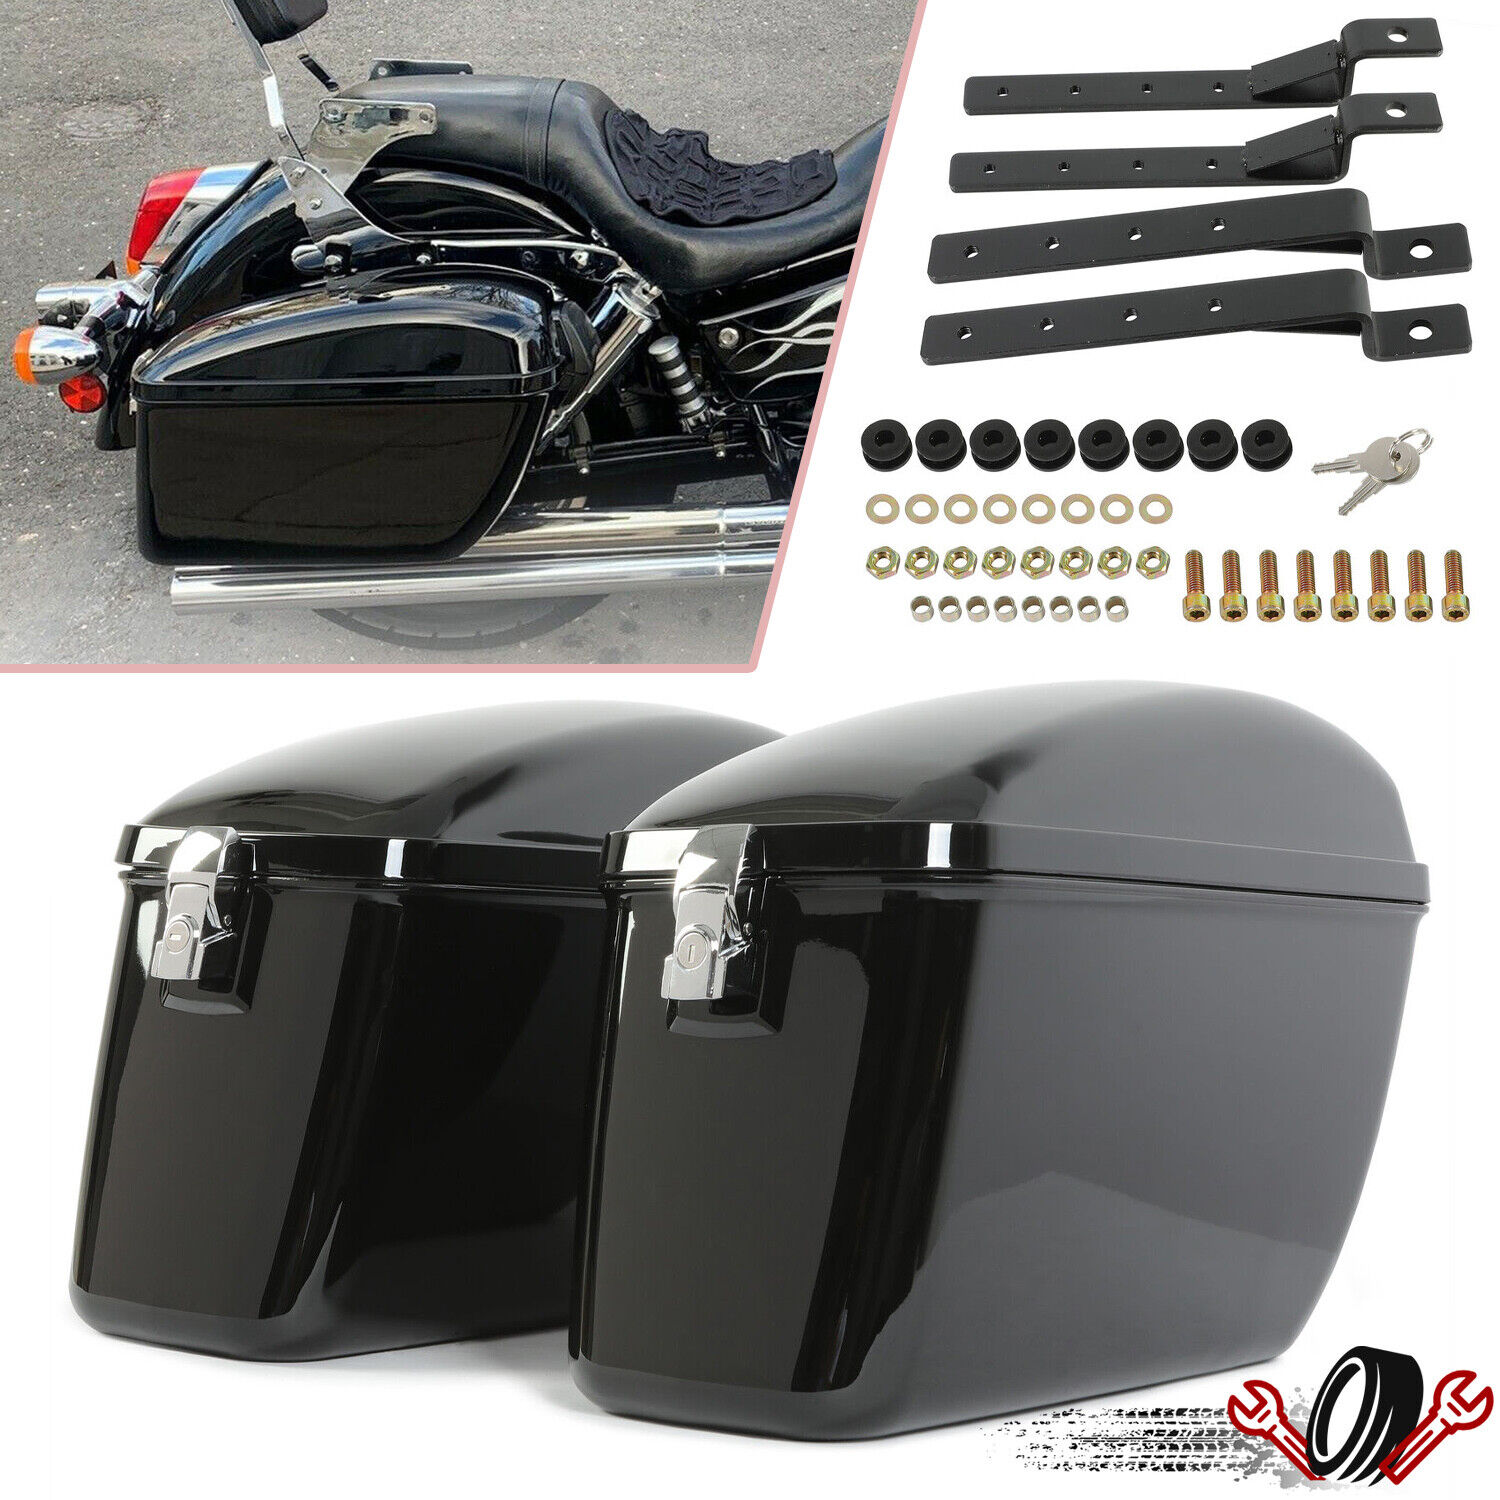 Motorcycle Hard Saddlebags Saddle Bags Luggage Case For Harley Honda Yamaha